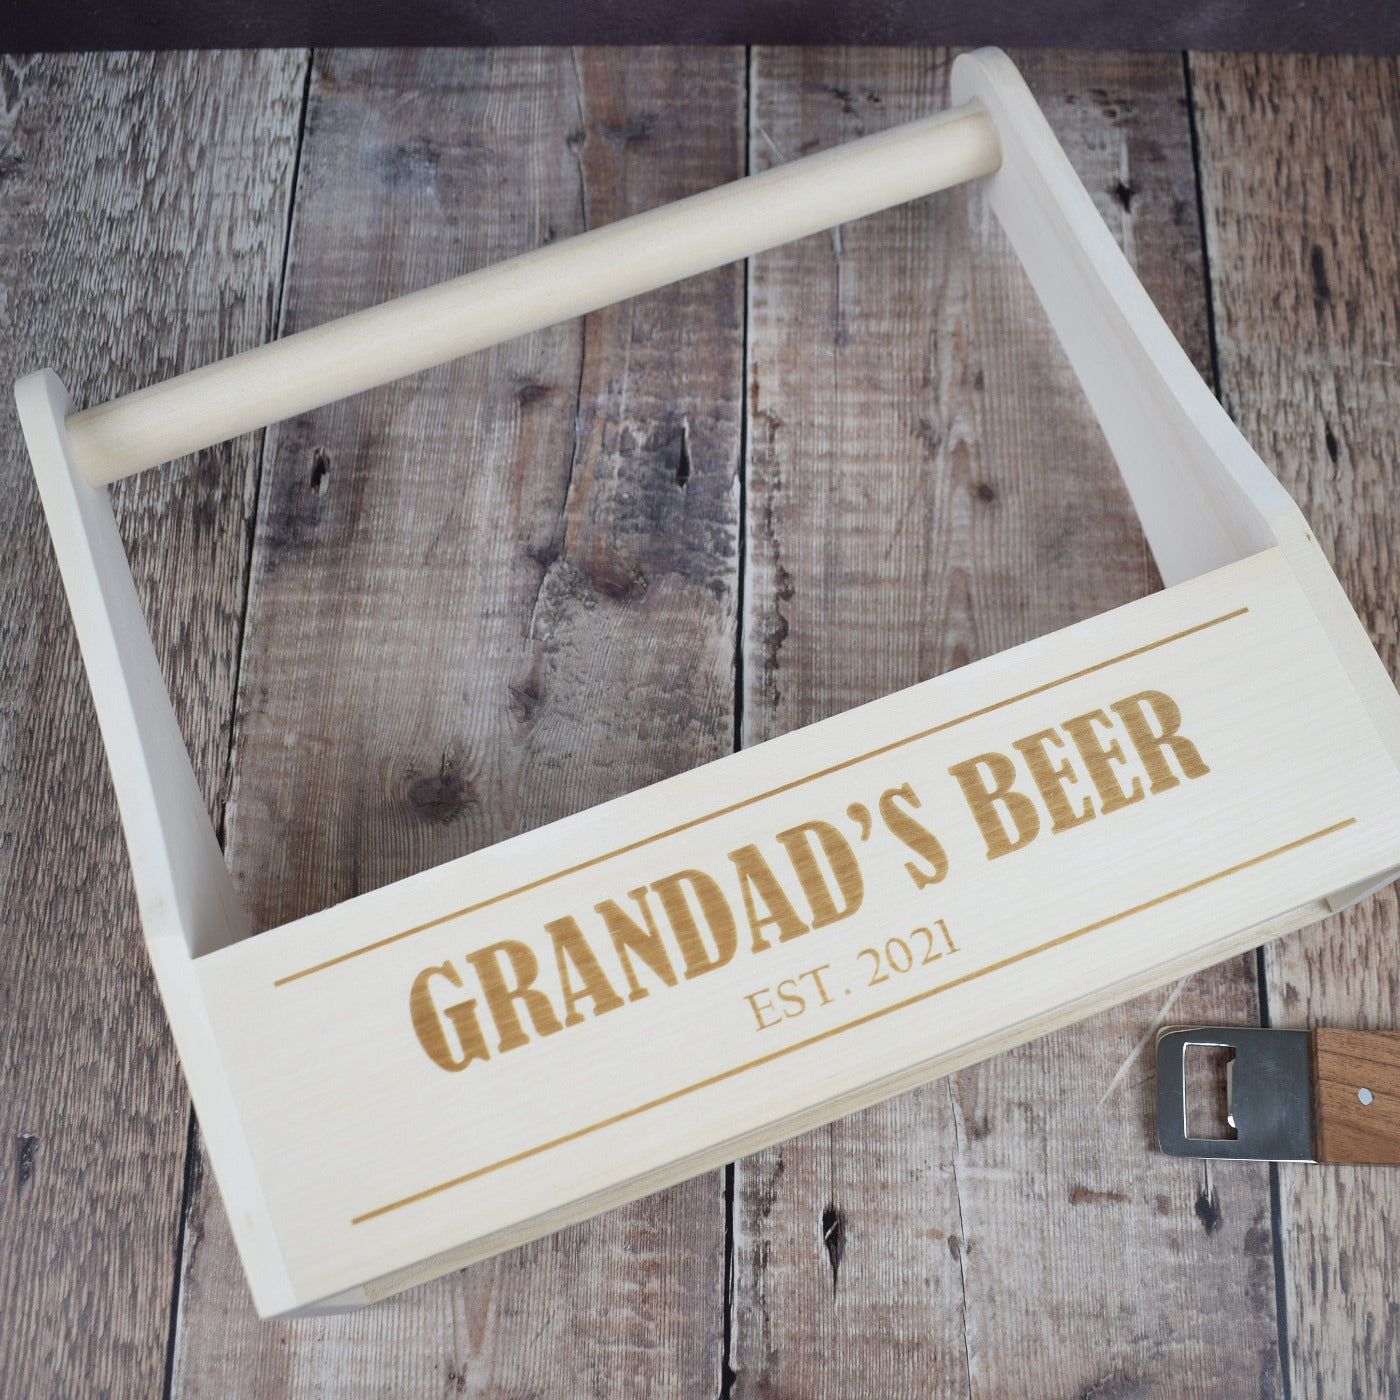 Personalised Beer Carrier Wooden Beer Crate - Grandad's Beer